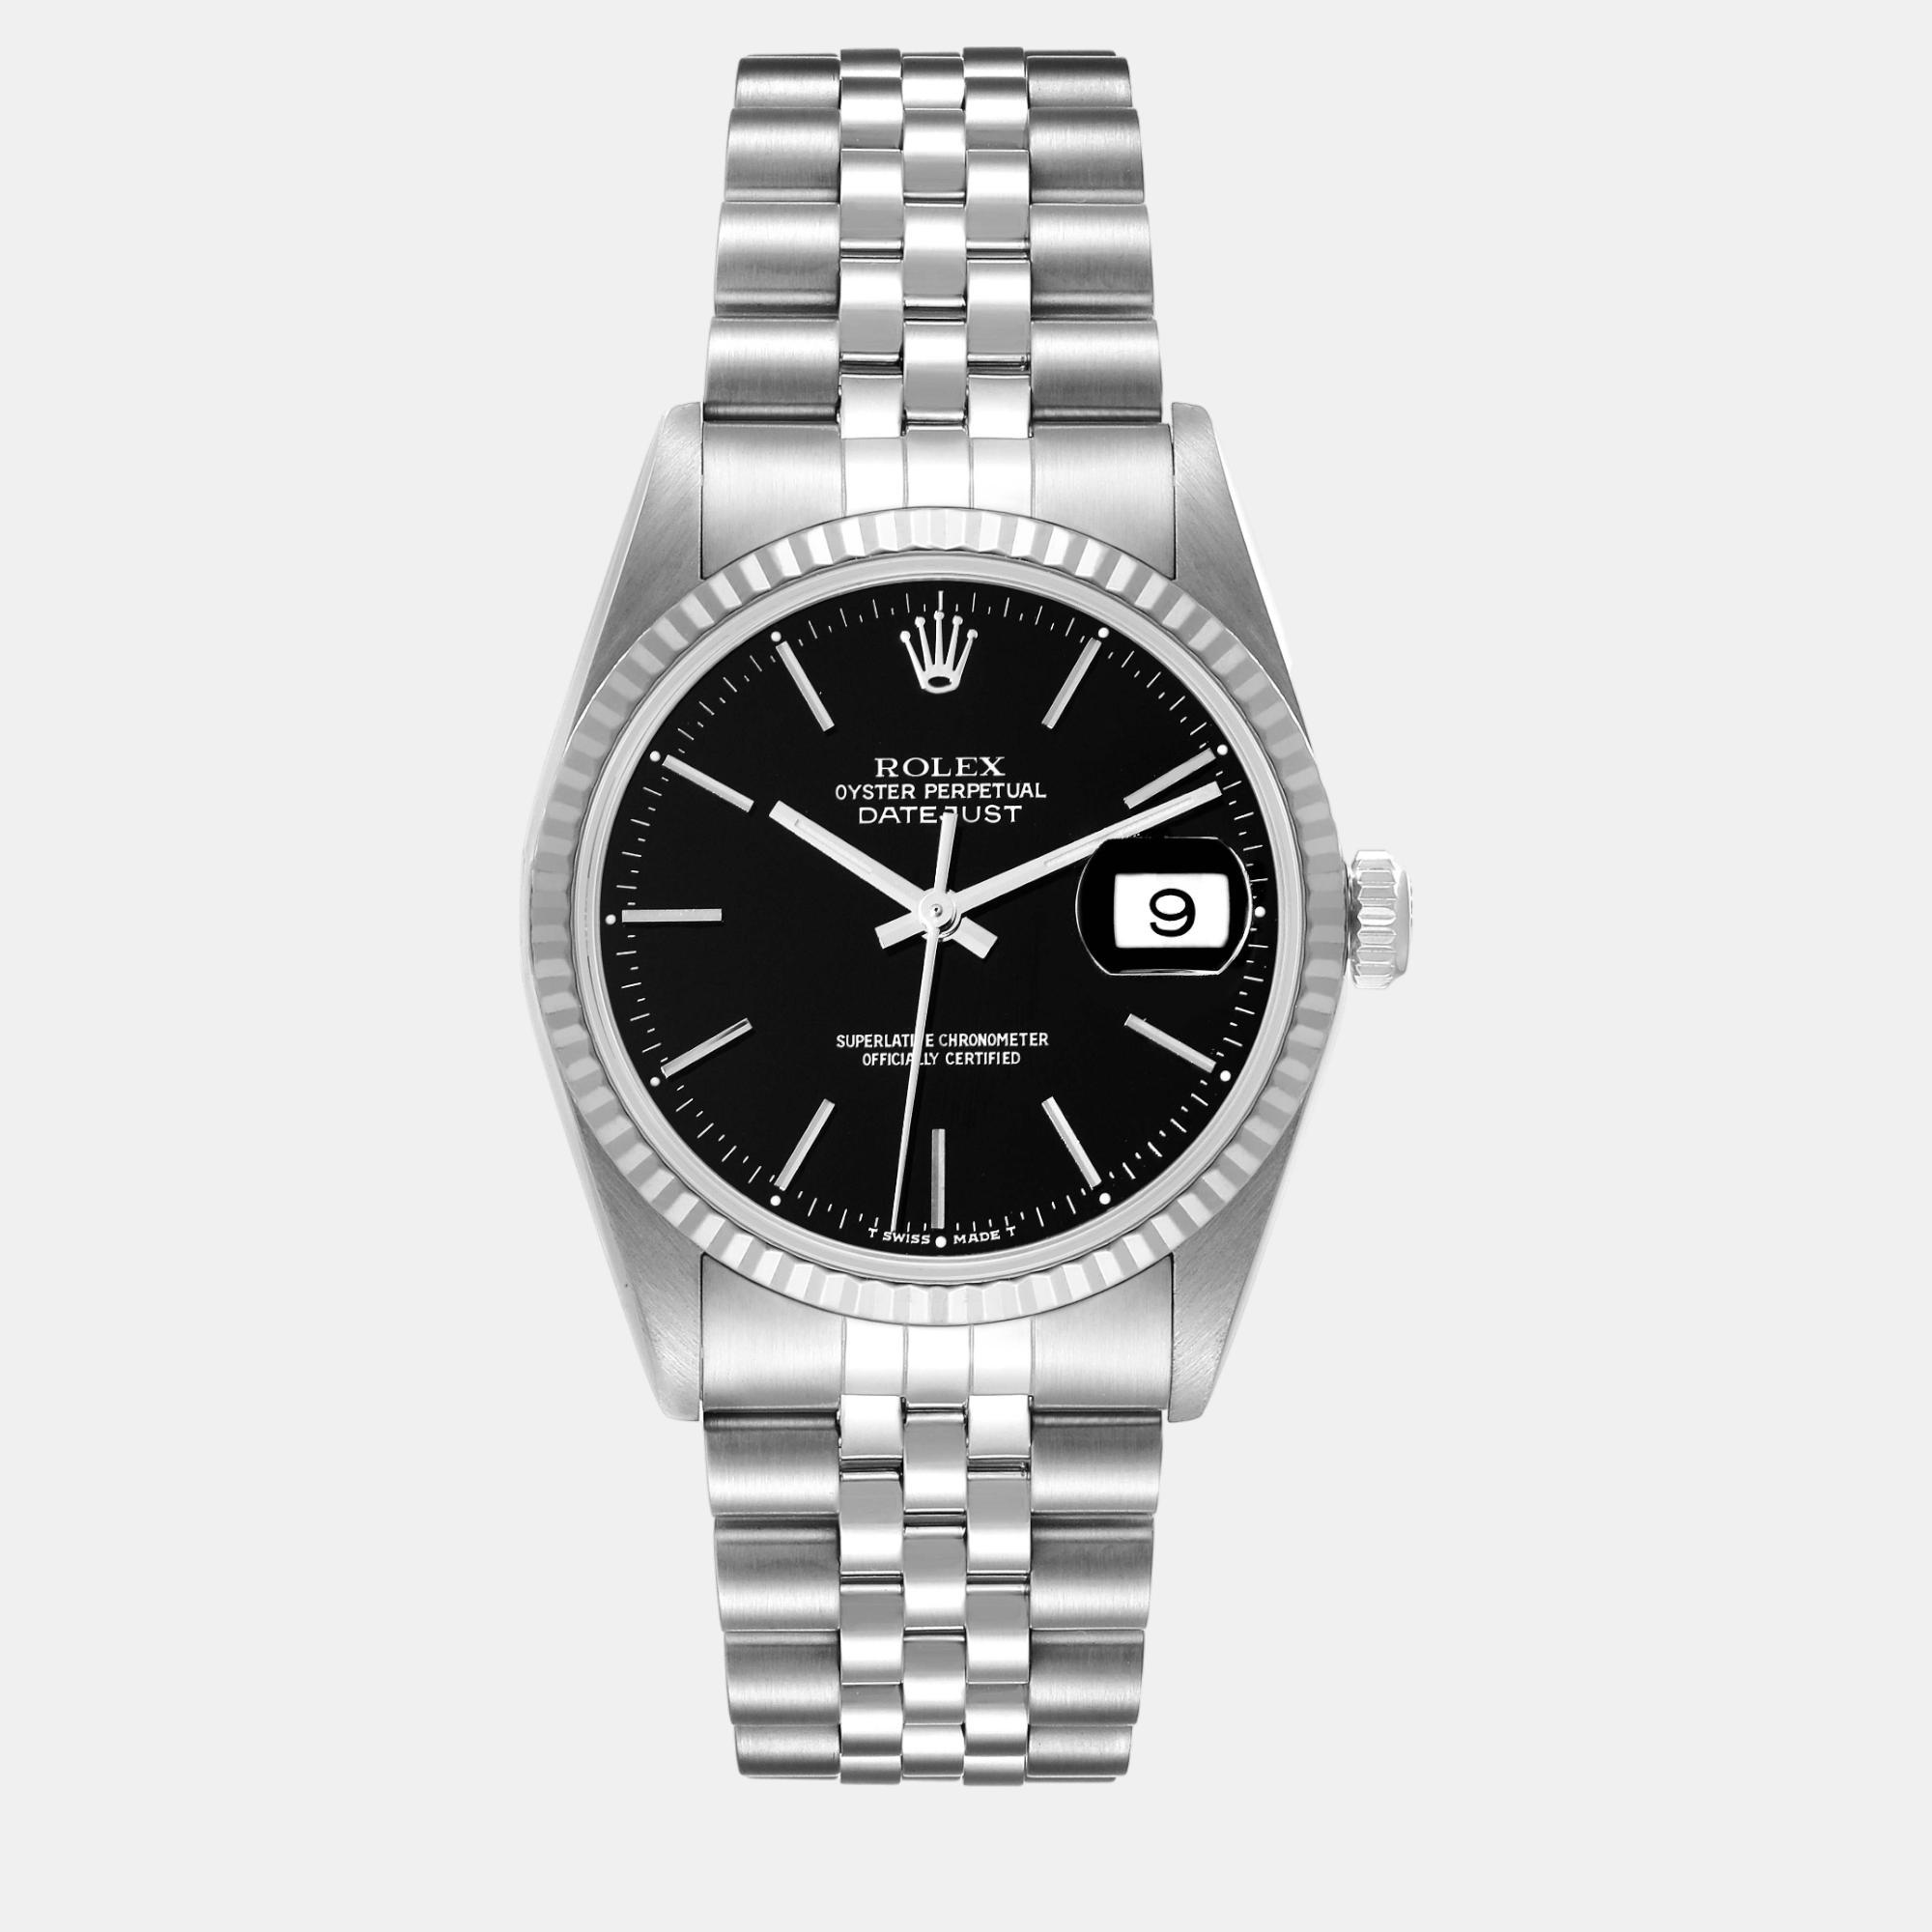 Rolex datejust black dial steel white gold men's watch 36 mm